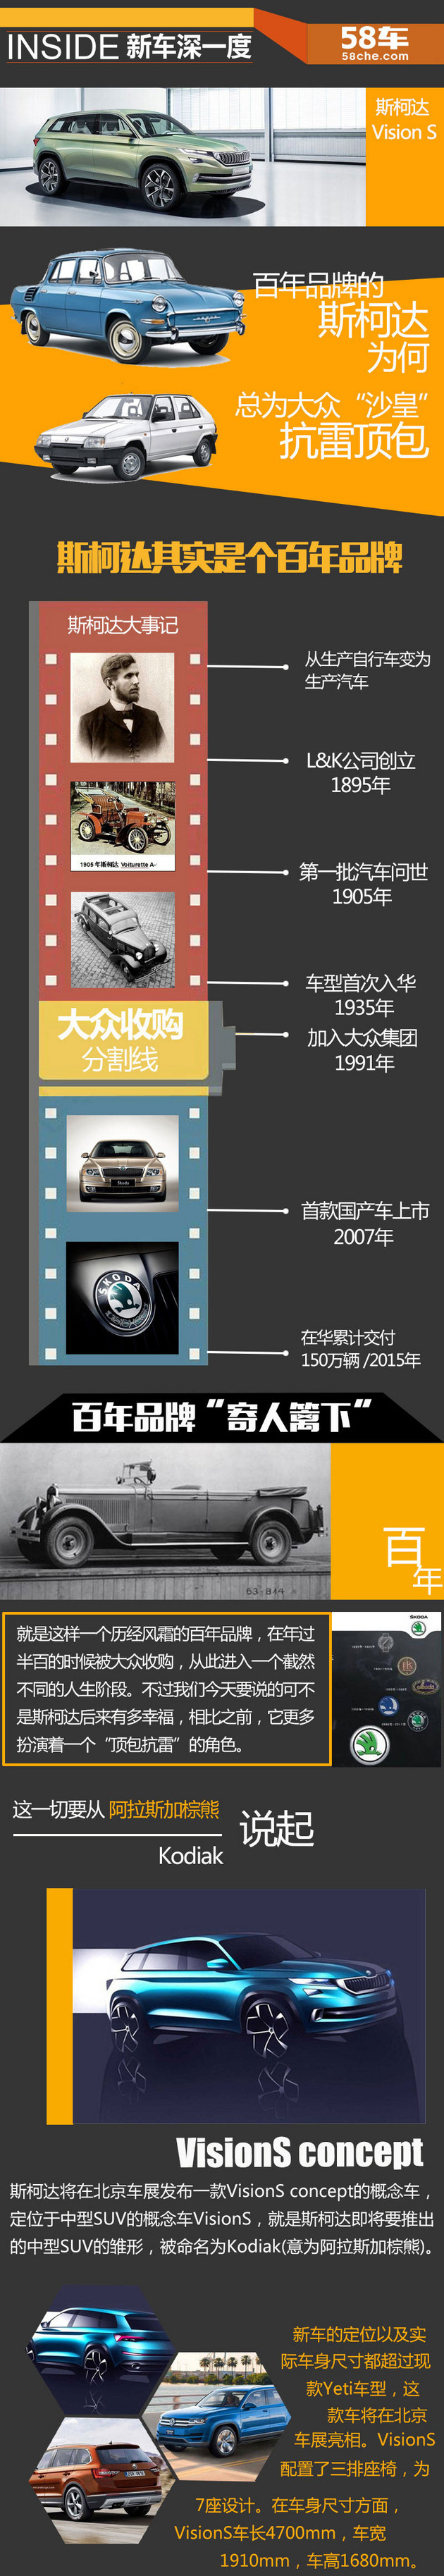 2016北京车展特别企划：斯柯达Vision S